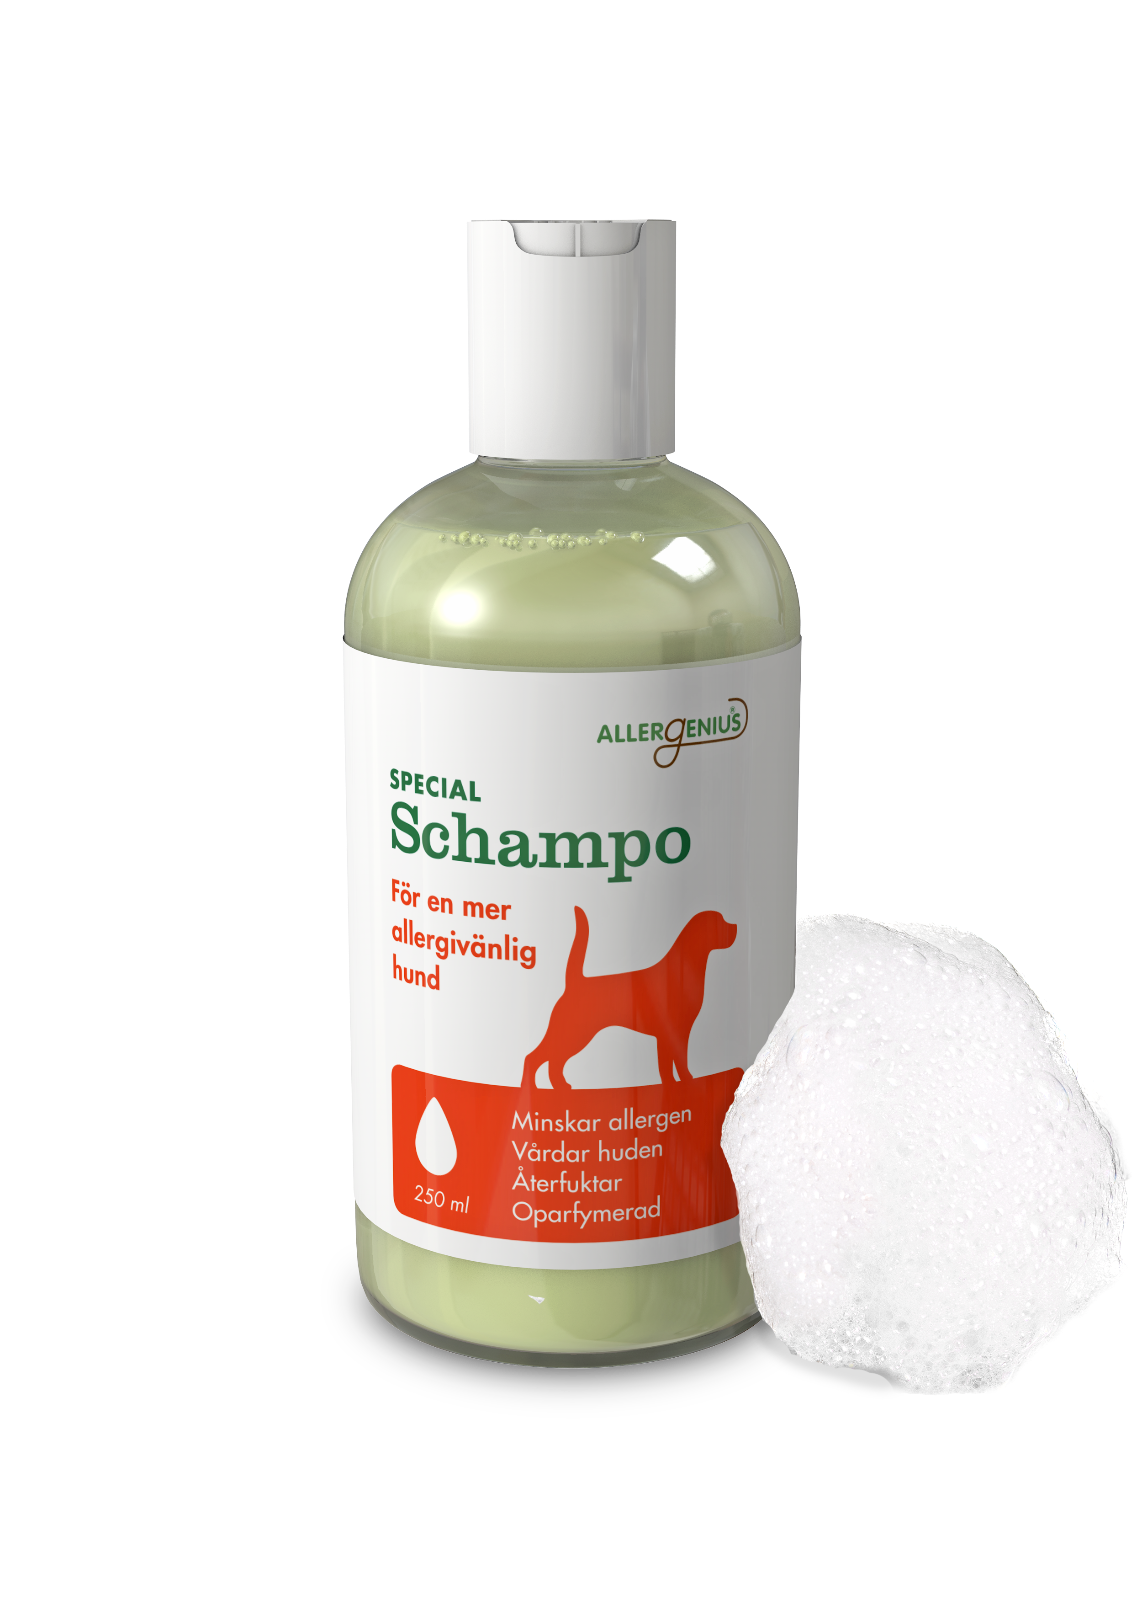 Allergenius® Dog Special Shampoo